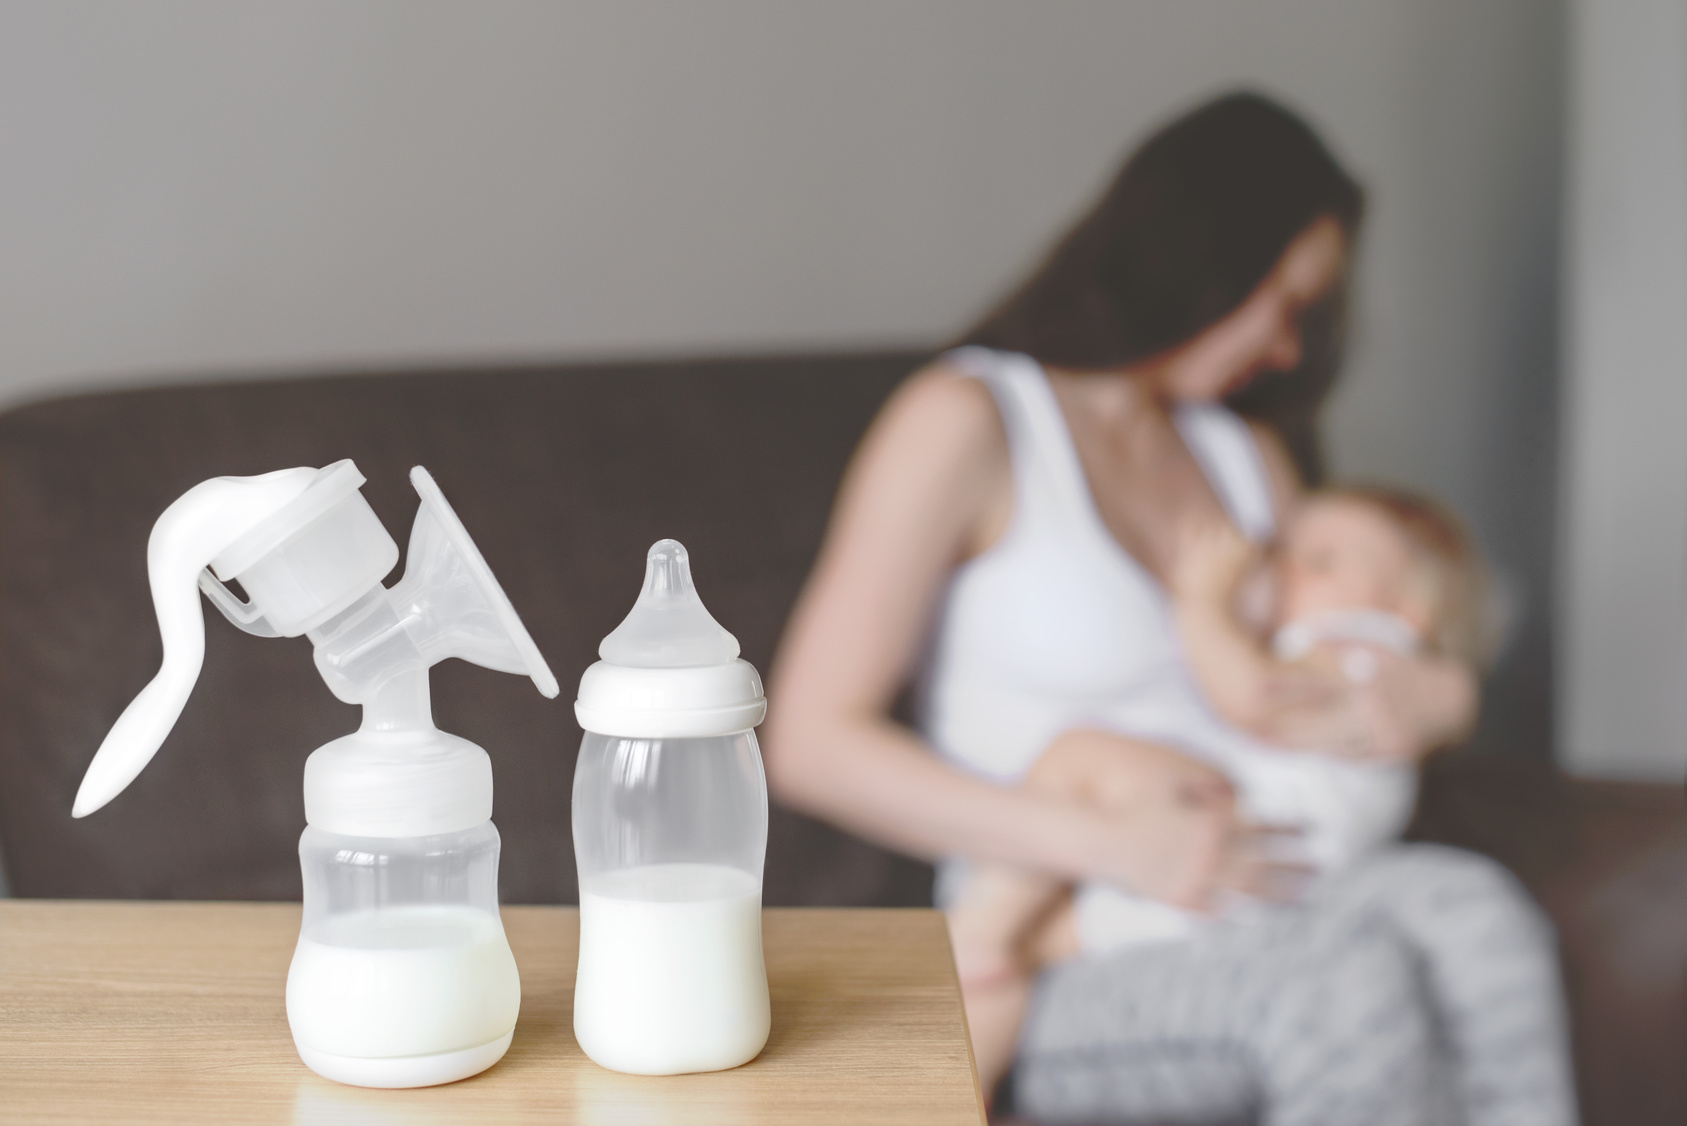 L’allattamento al seno è molto importante. Il latte che la mamma produce è un latte unico, inimitabile, specifico per il proprio bambino, con una composizione ideale per le sue esigenze nutritive e di sviluppo. E’ anche ricco di sostanze biologicamente attive con molti effetti positivi: aiutano la digestione del bambino, rinforzano il suo sistema immunitario […]